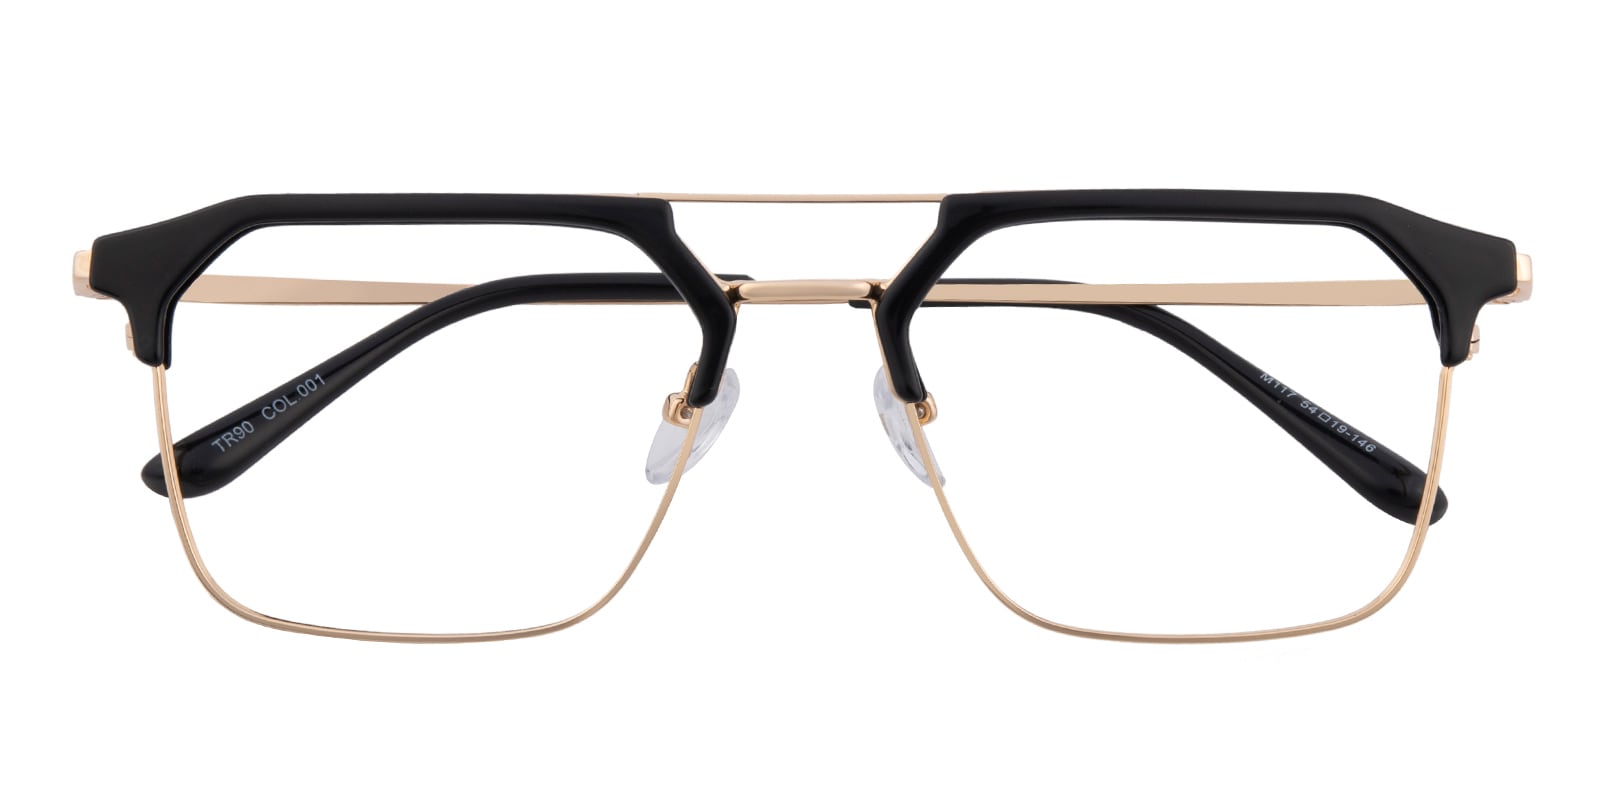 Aviator|Browline Eyeglasses, Full Frame Black/Golden TR90|Metal - FP2661